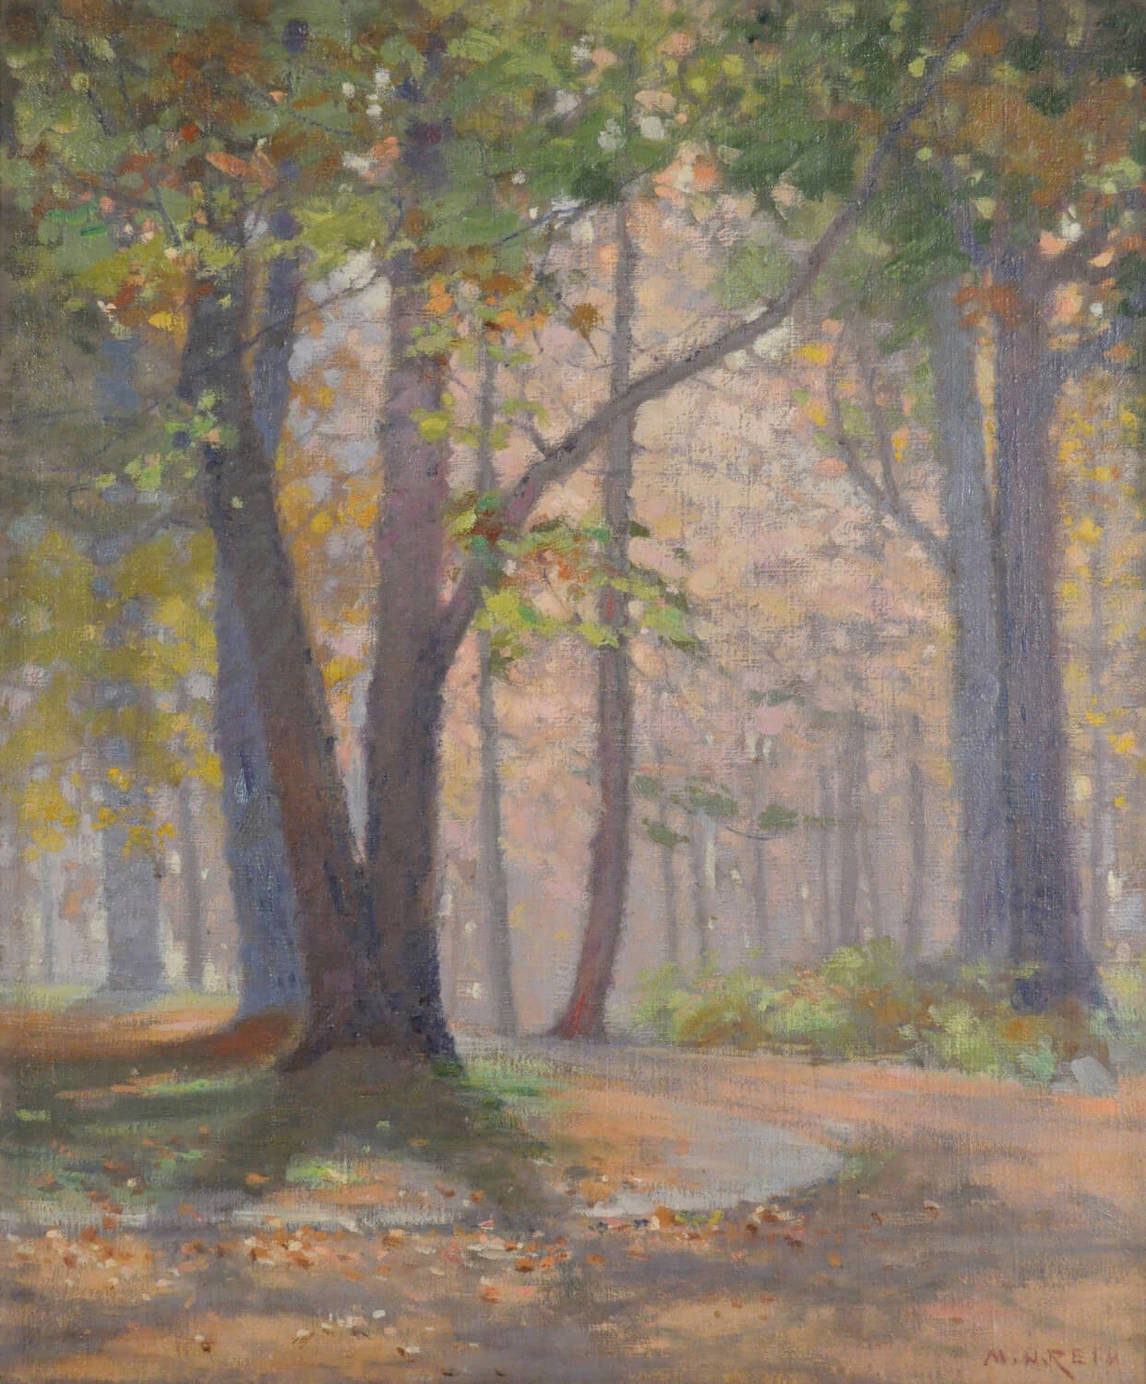 Mary Hiester Reid, Autumn, Wychwood Park, c.1910